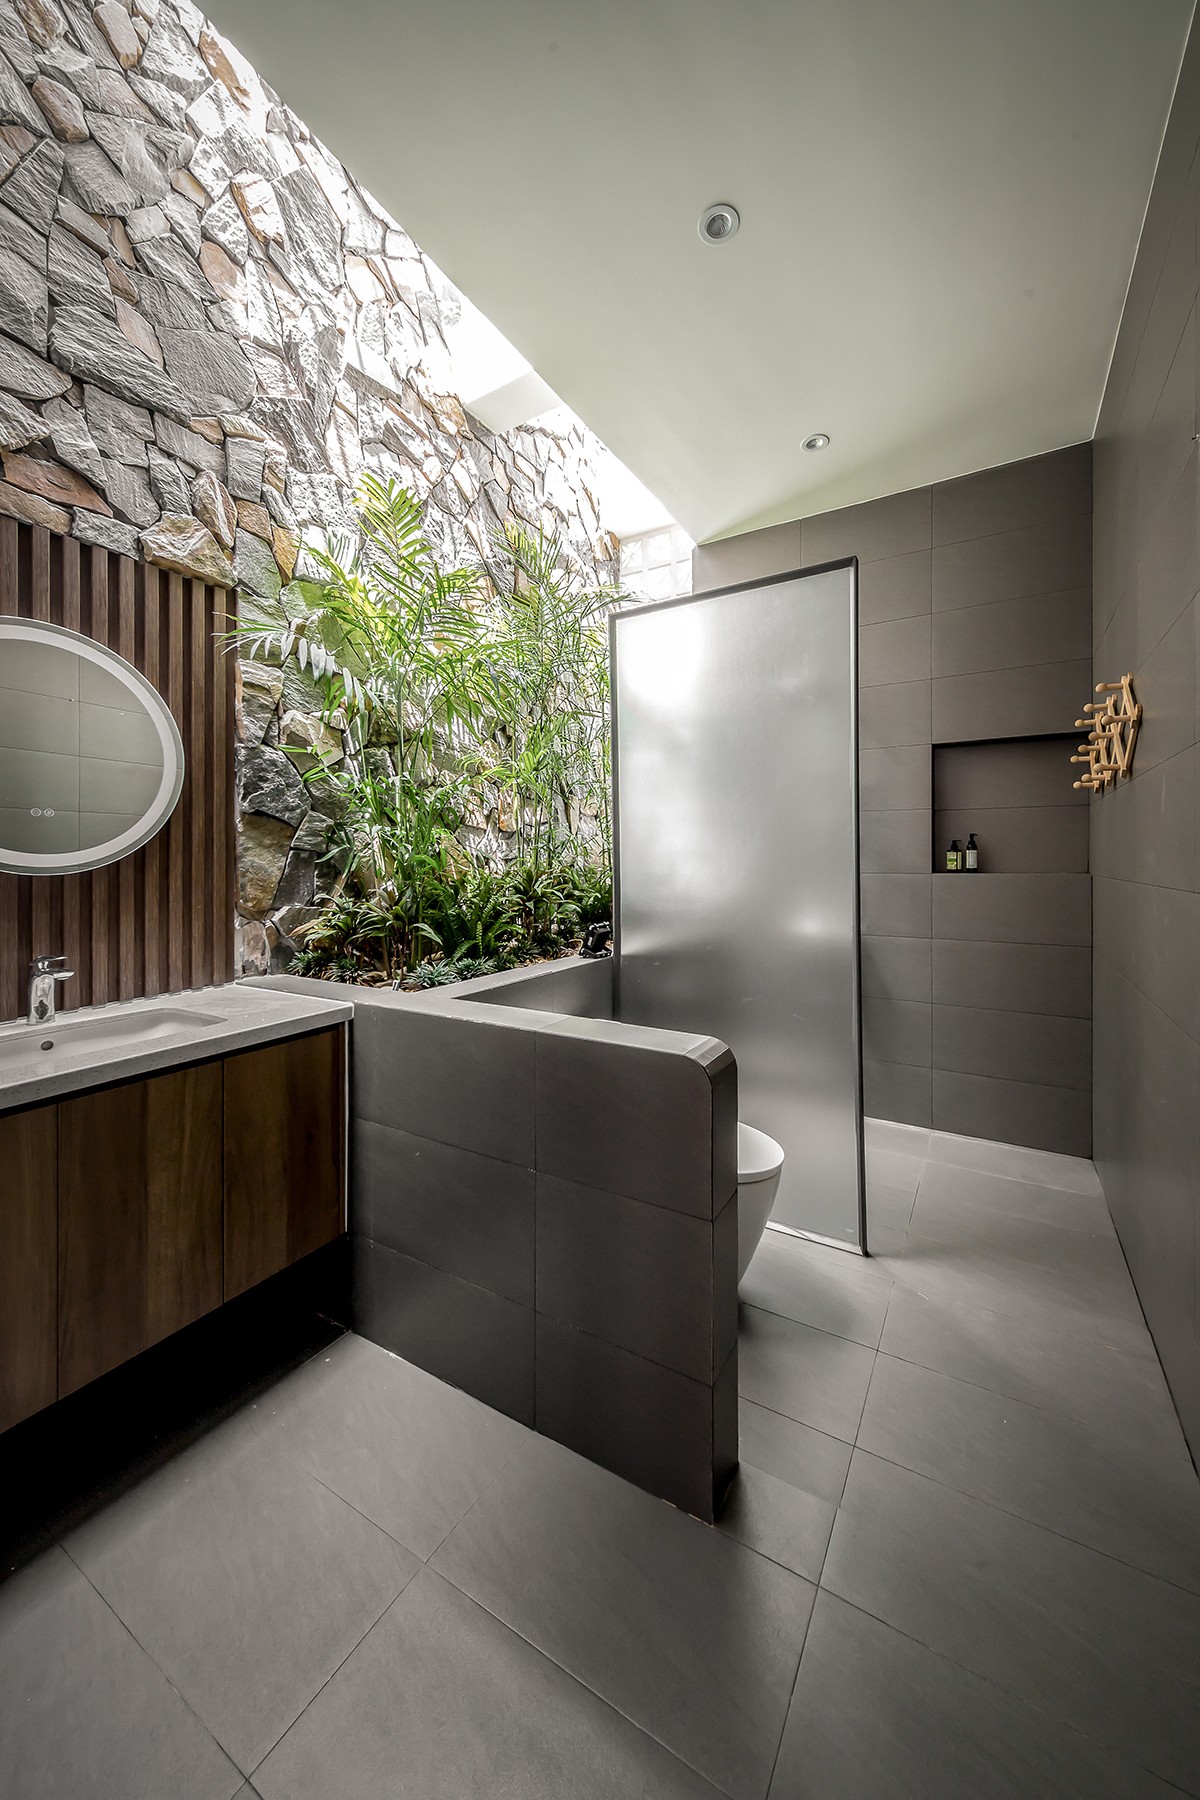 
Phòng tắm với thiết kế có hướng nhìn về phía cây xanh
